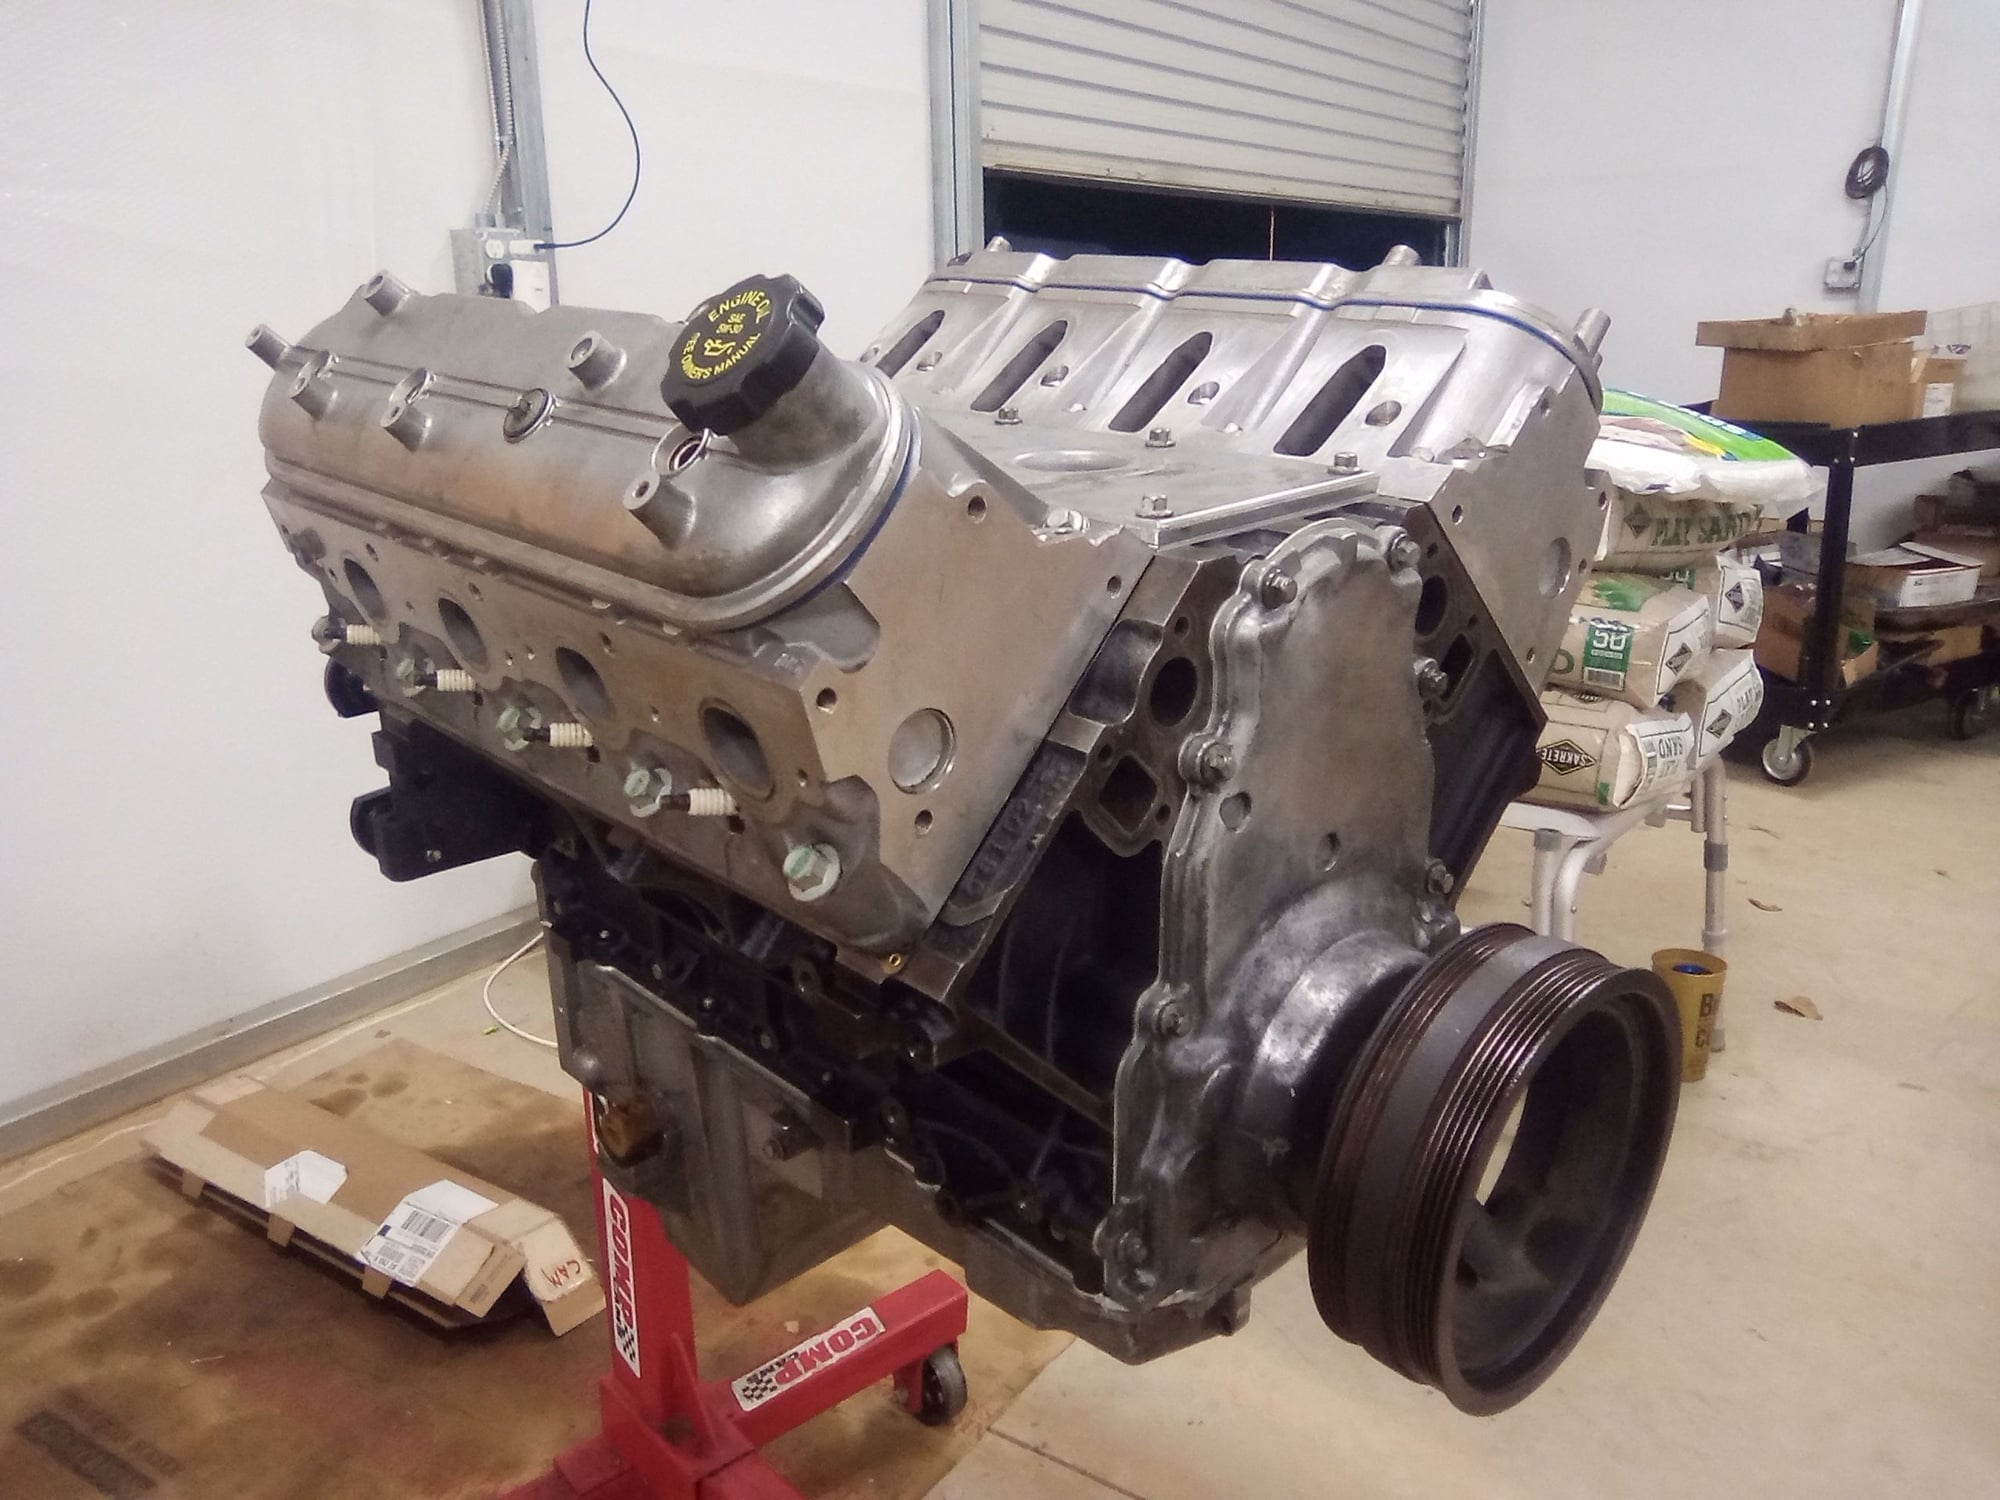 Engine - Complete - 5.3 LS Gen III Rebuilt Engine - Used - 0  All Models - Greer, SC 29651, United States